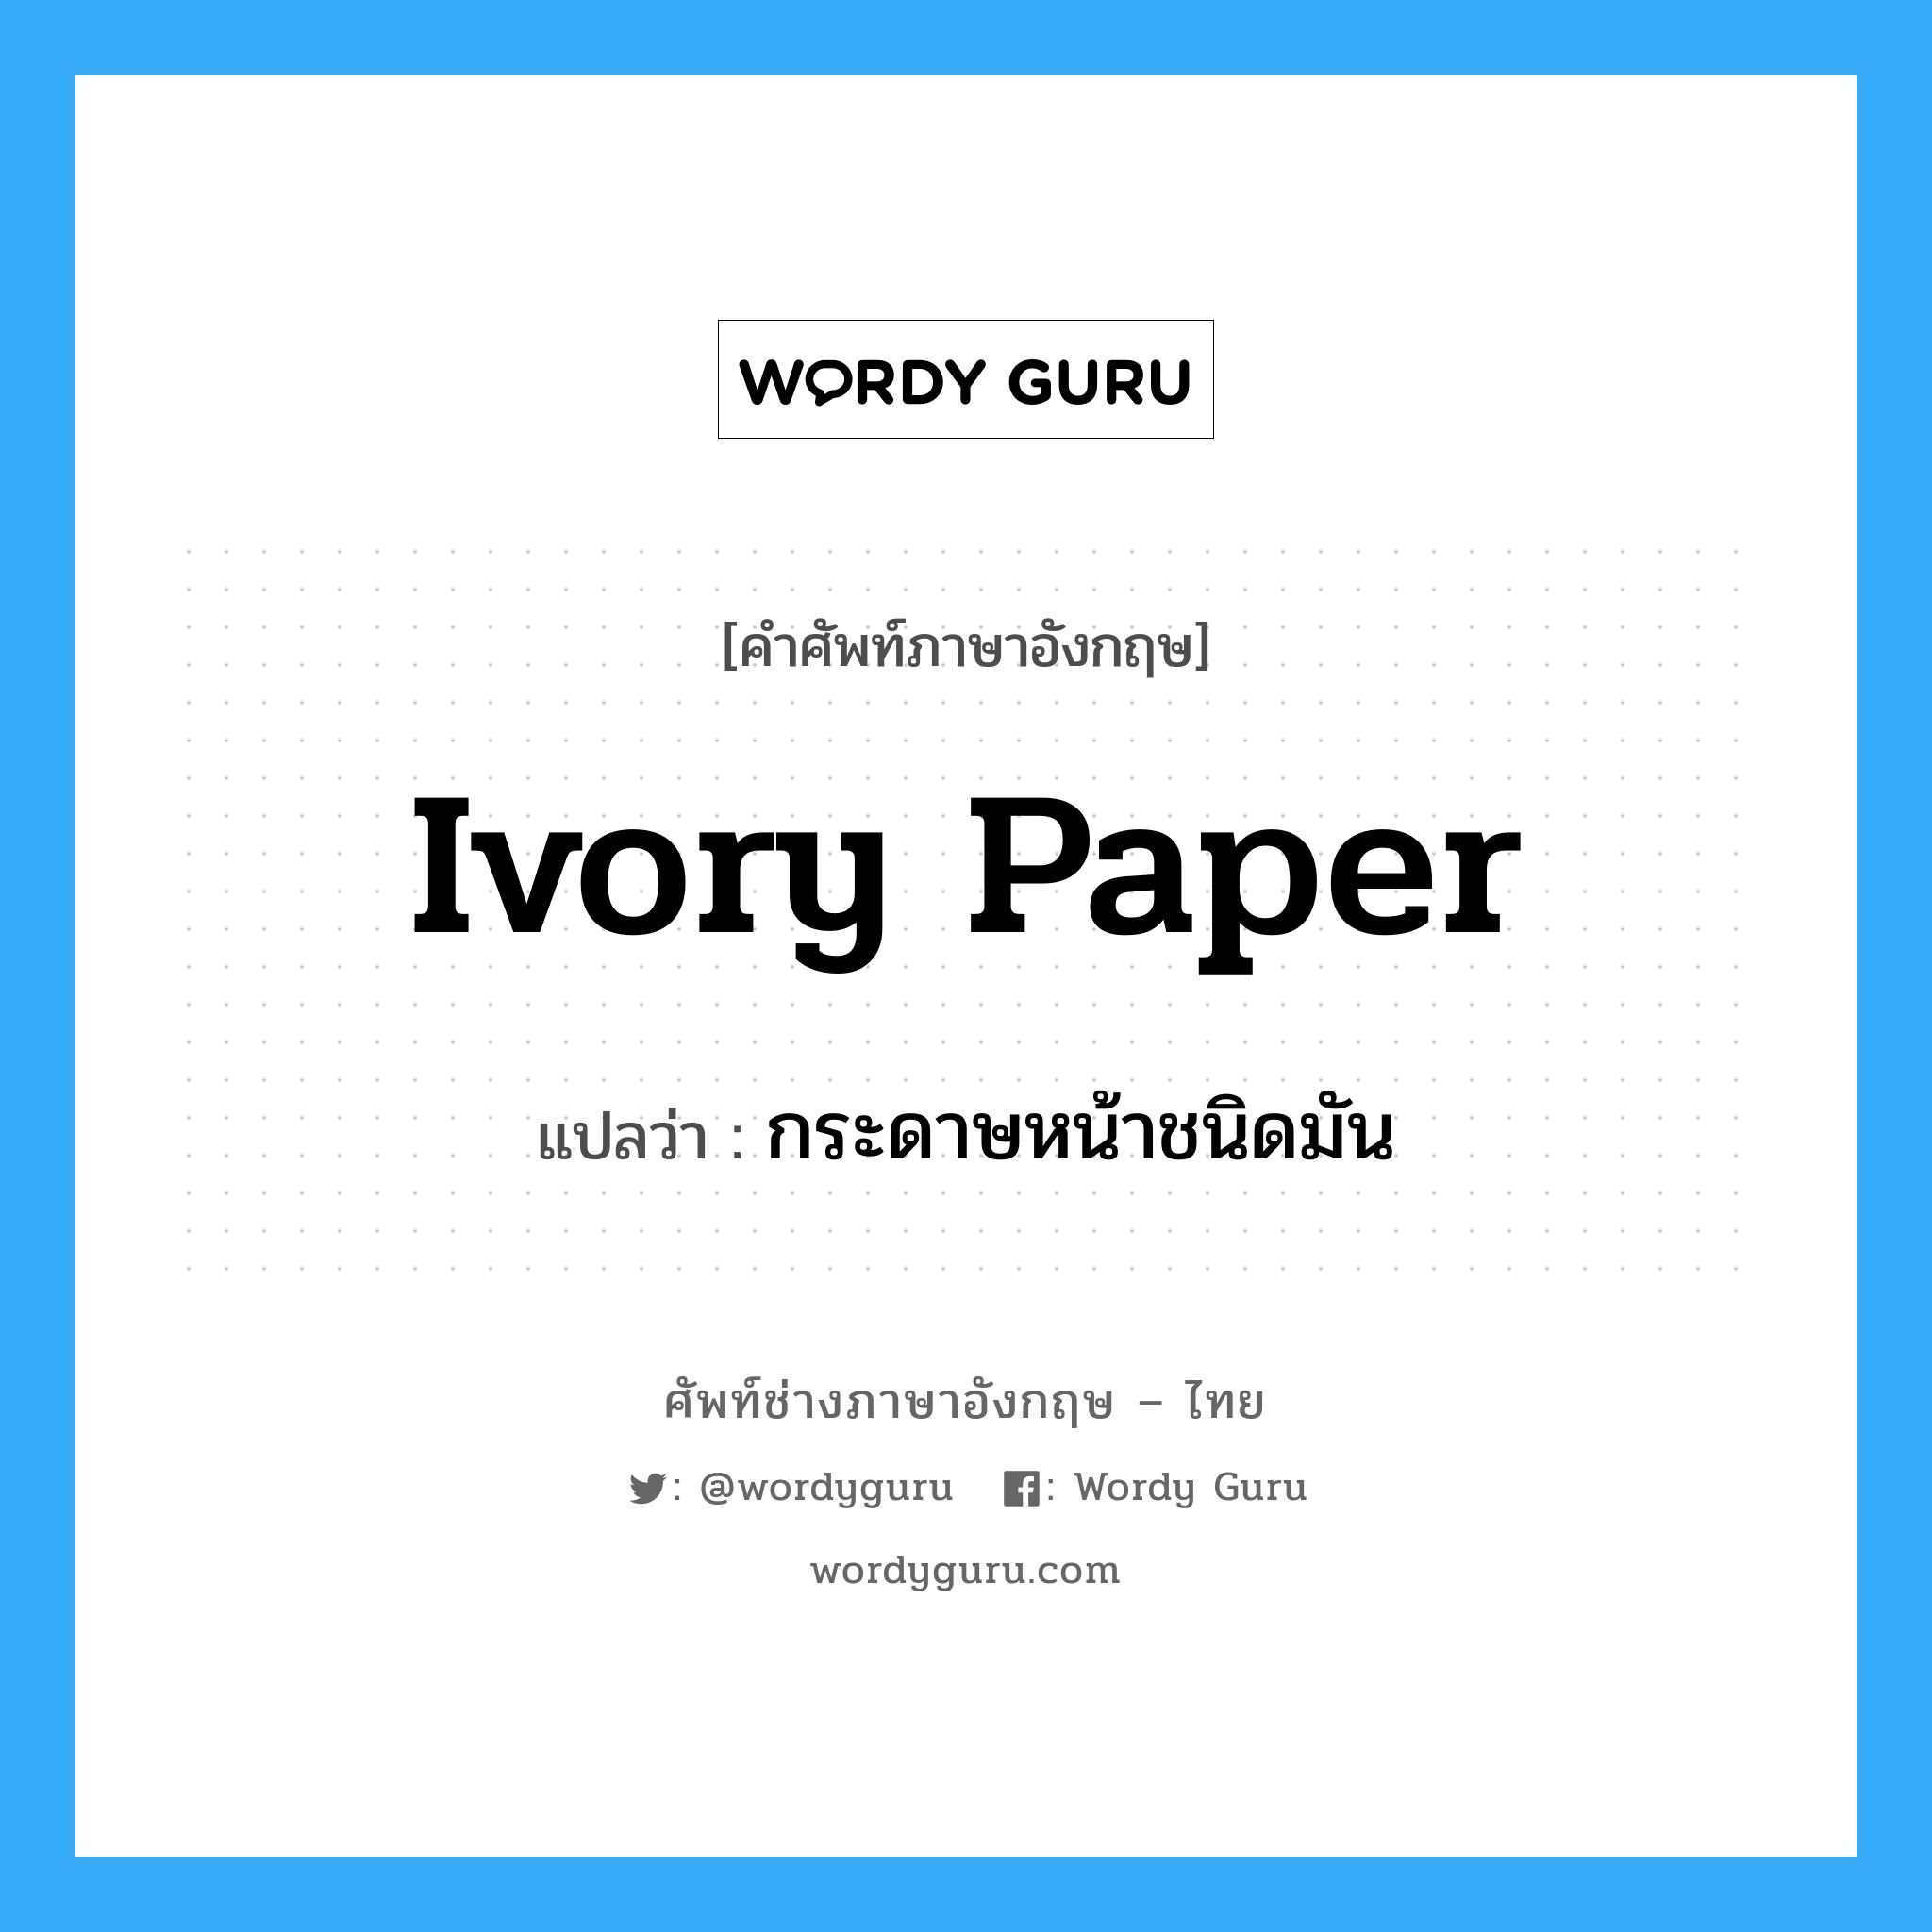 ivory paper แปลว่า?, คำศัพท์ช่างภาษาอังกฤษ - ไทย ivory paper คำศัพท์ภาษาอังกฤษ ivory paper แปลว่า กระดาษหน้าชนิดมัน